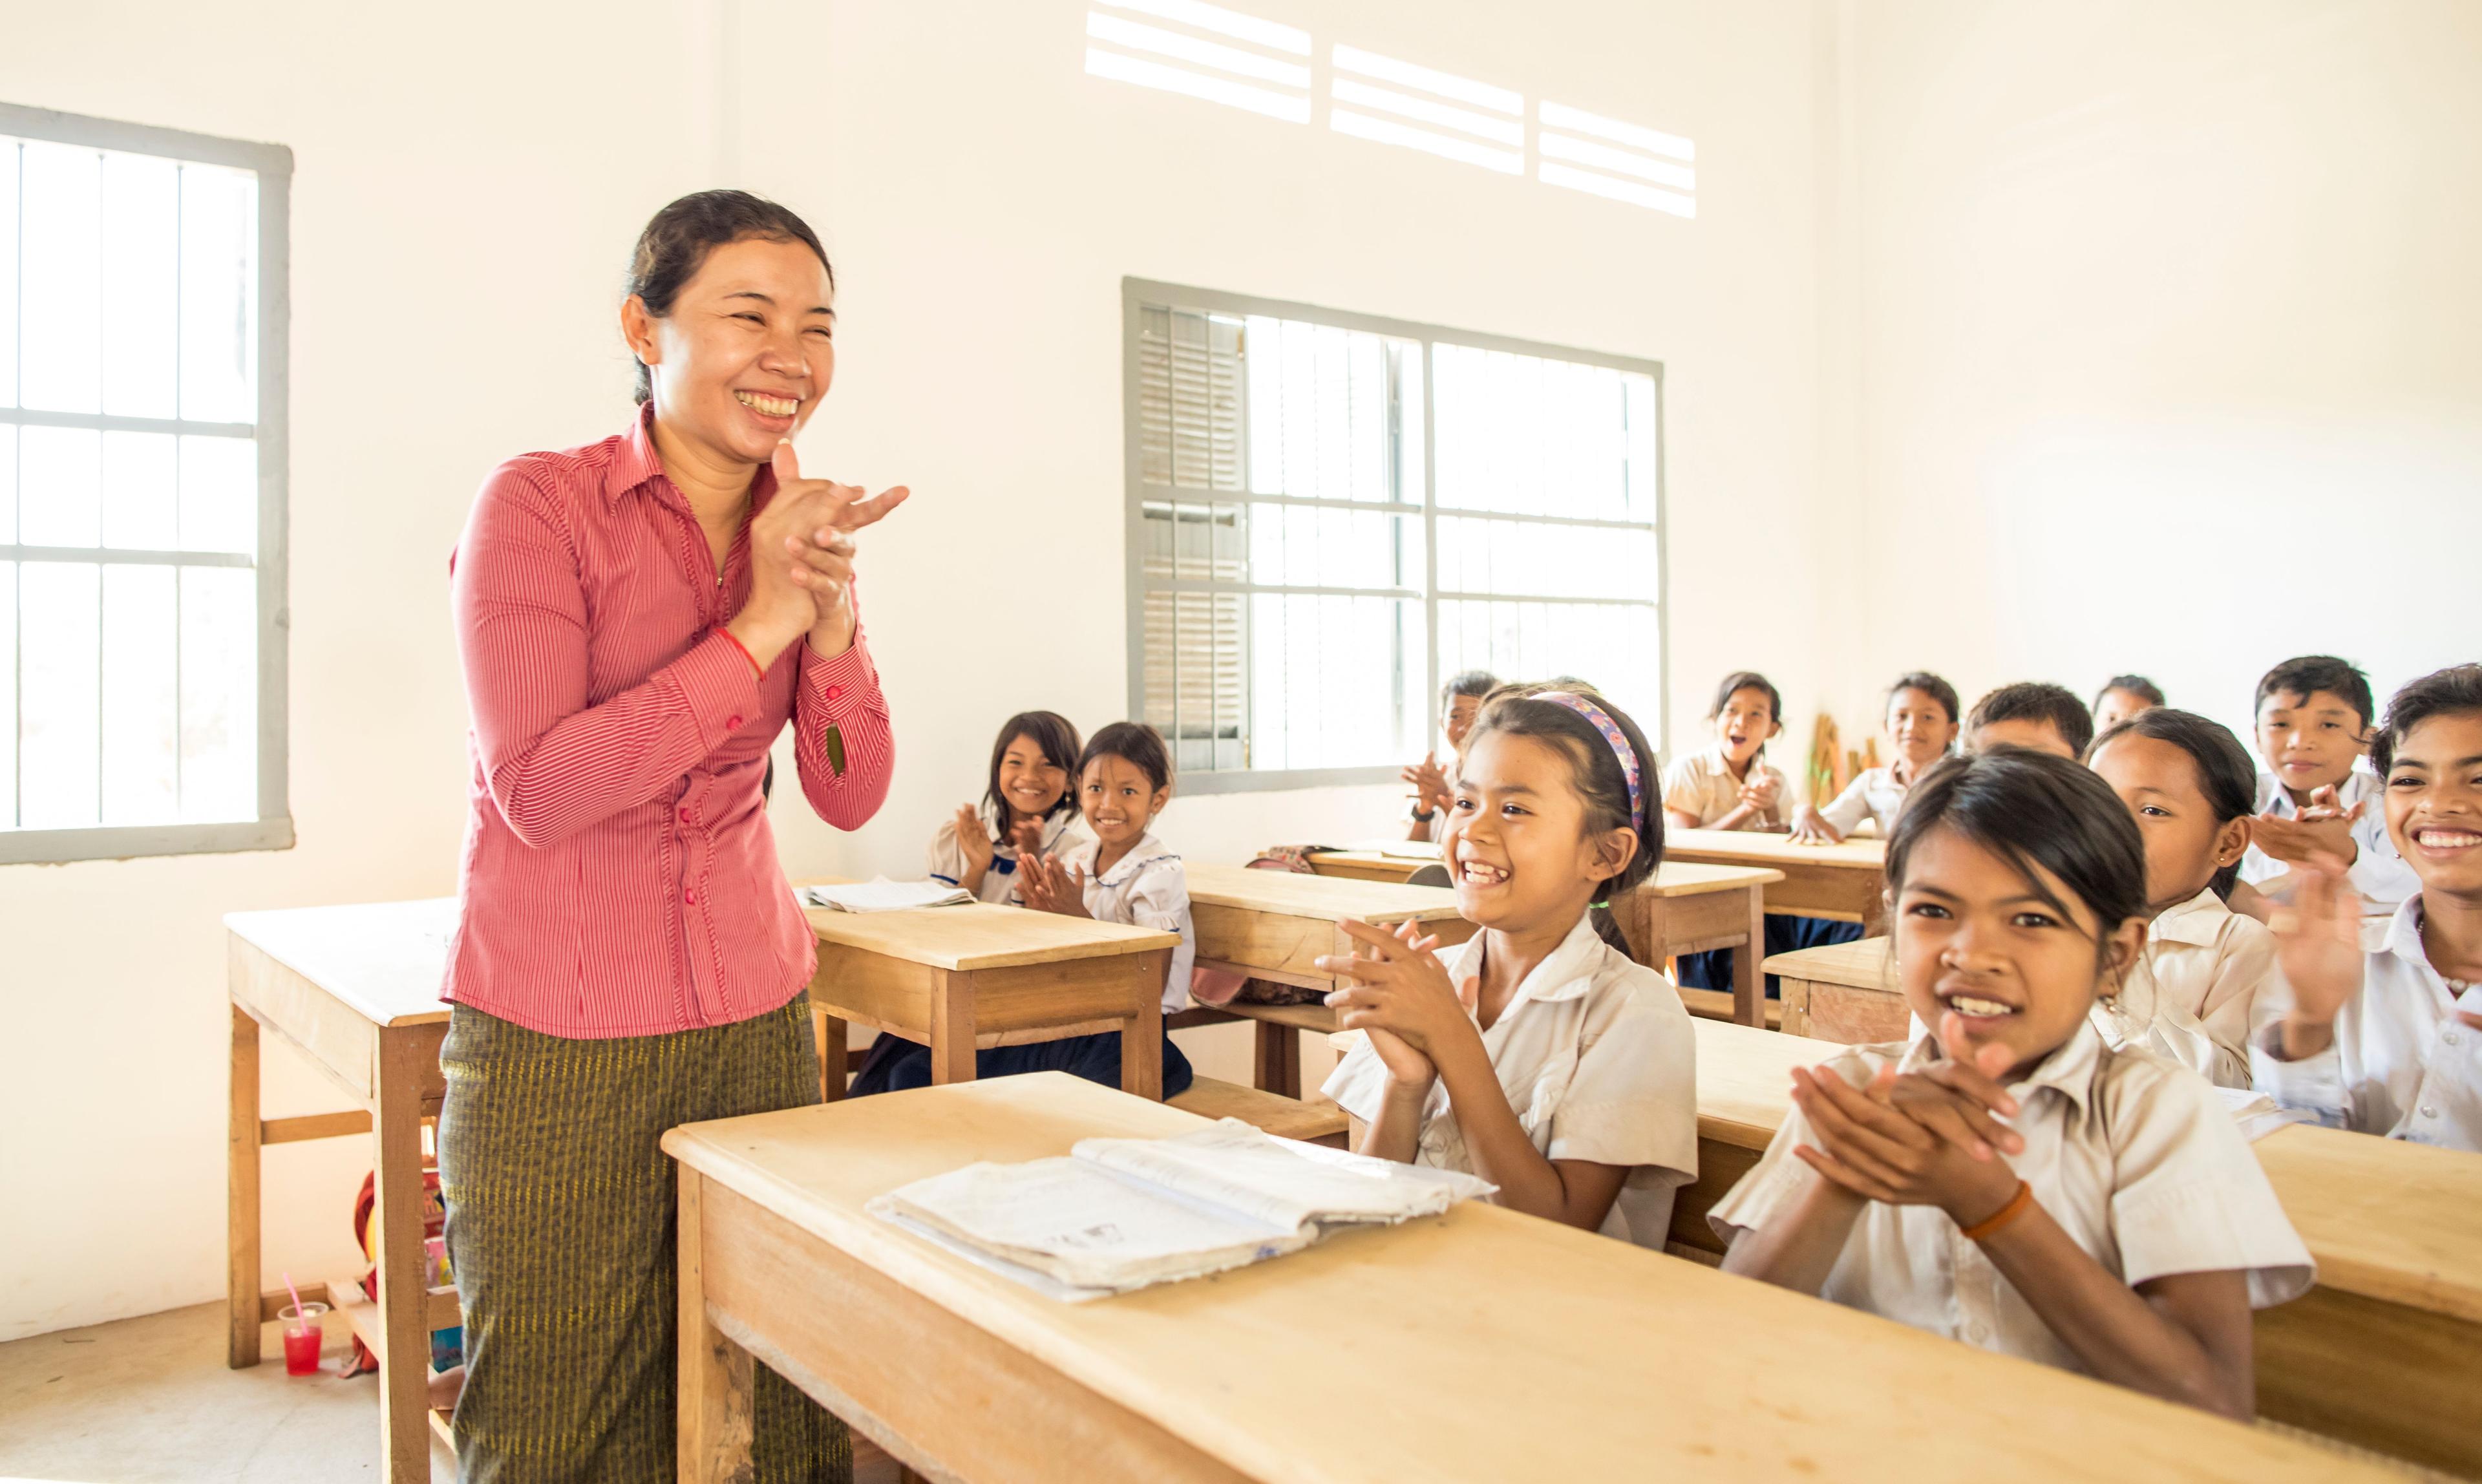 Schools in Cambodia